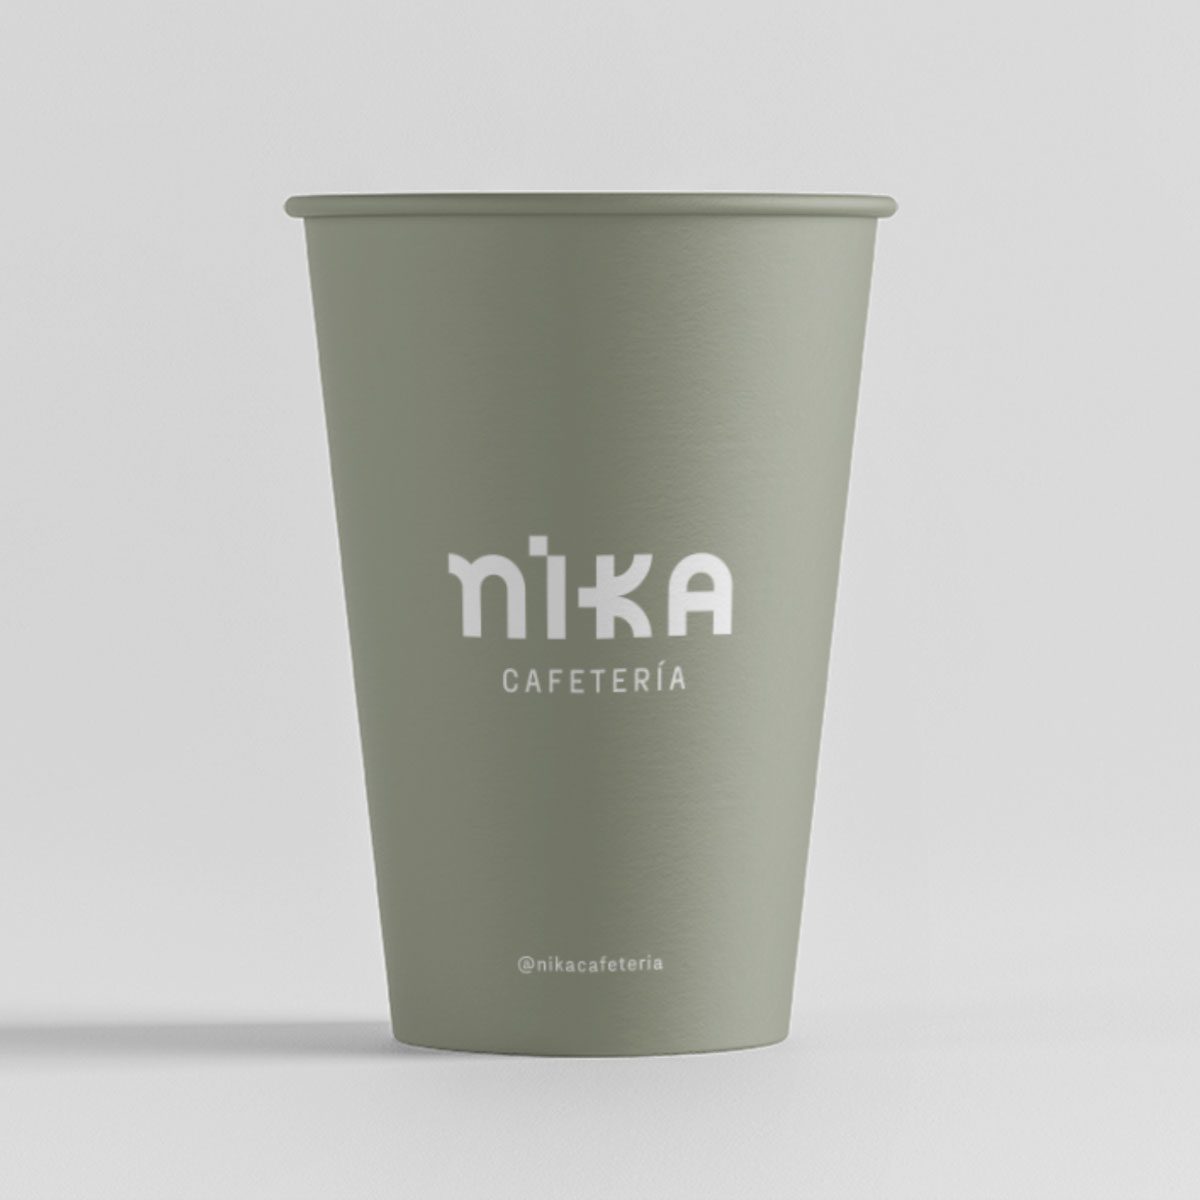 Nika coffee cup design